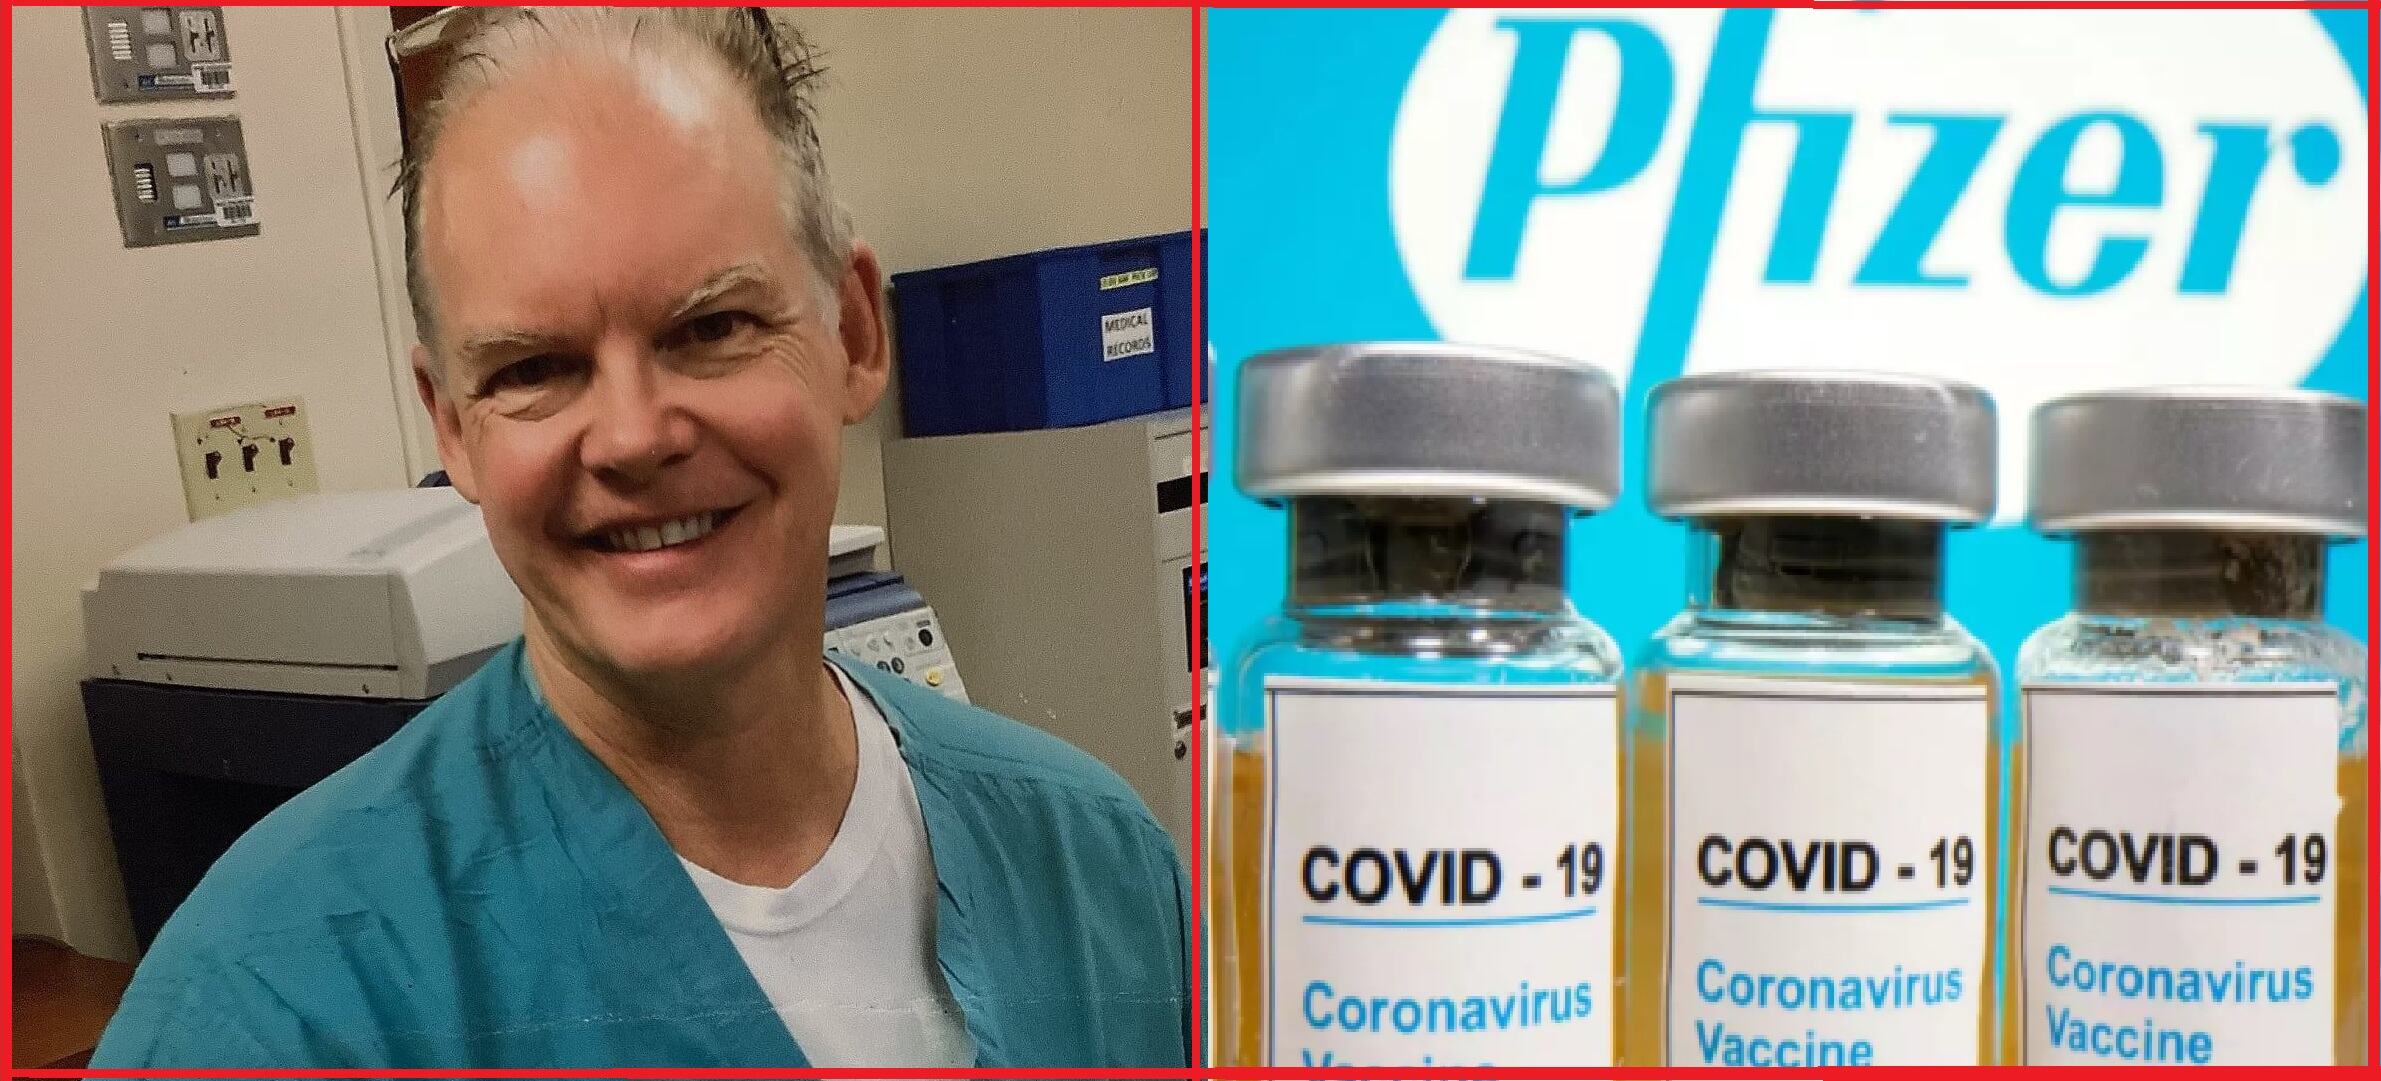 जर्मनी में कोरोना वैक्सीनेशन के बाद 10 लोगों की मौत, कनाडा में फाइजर टीका लगवाने वाले डाॅक्टर की गयी जान